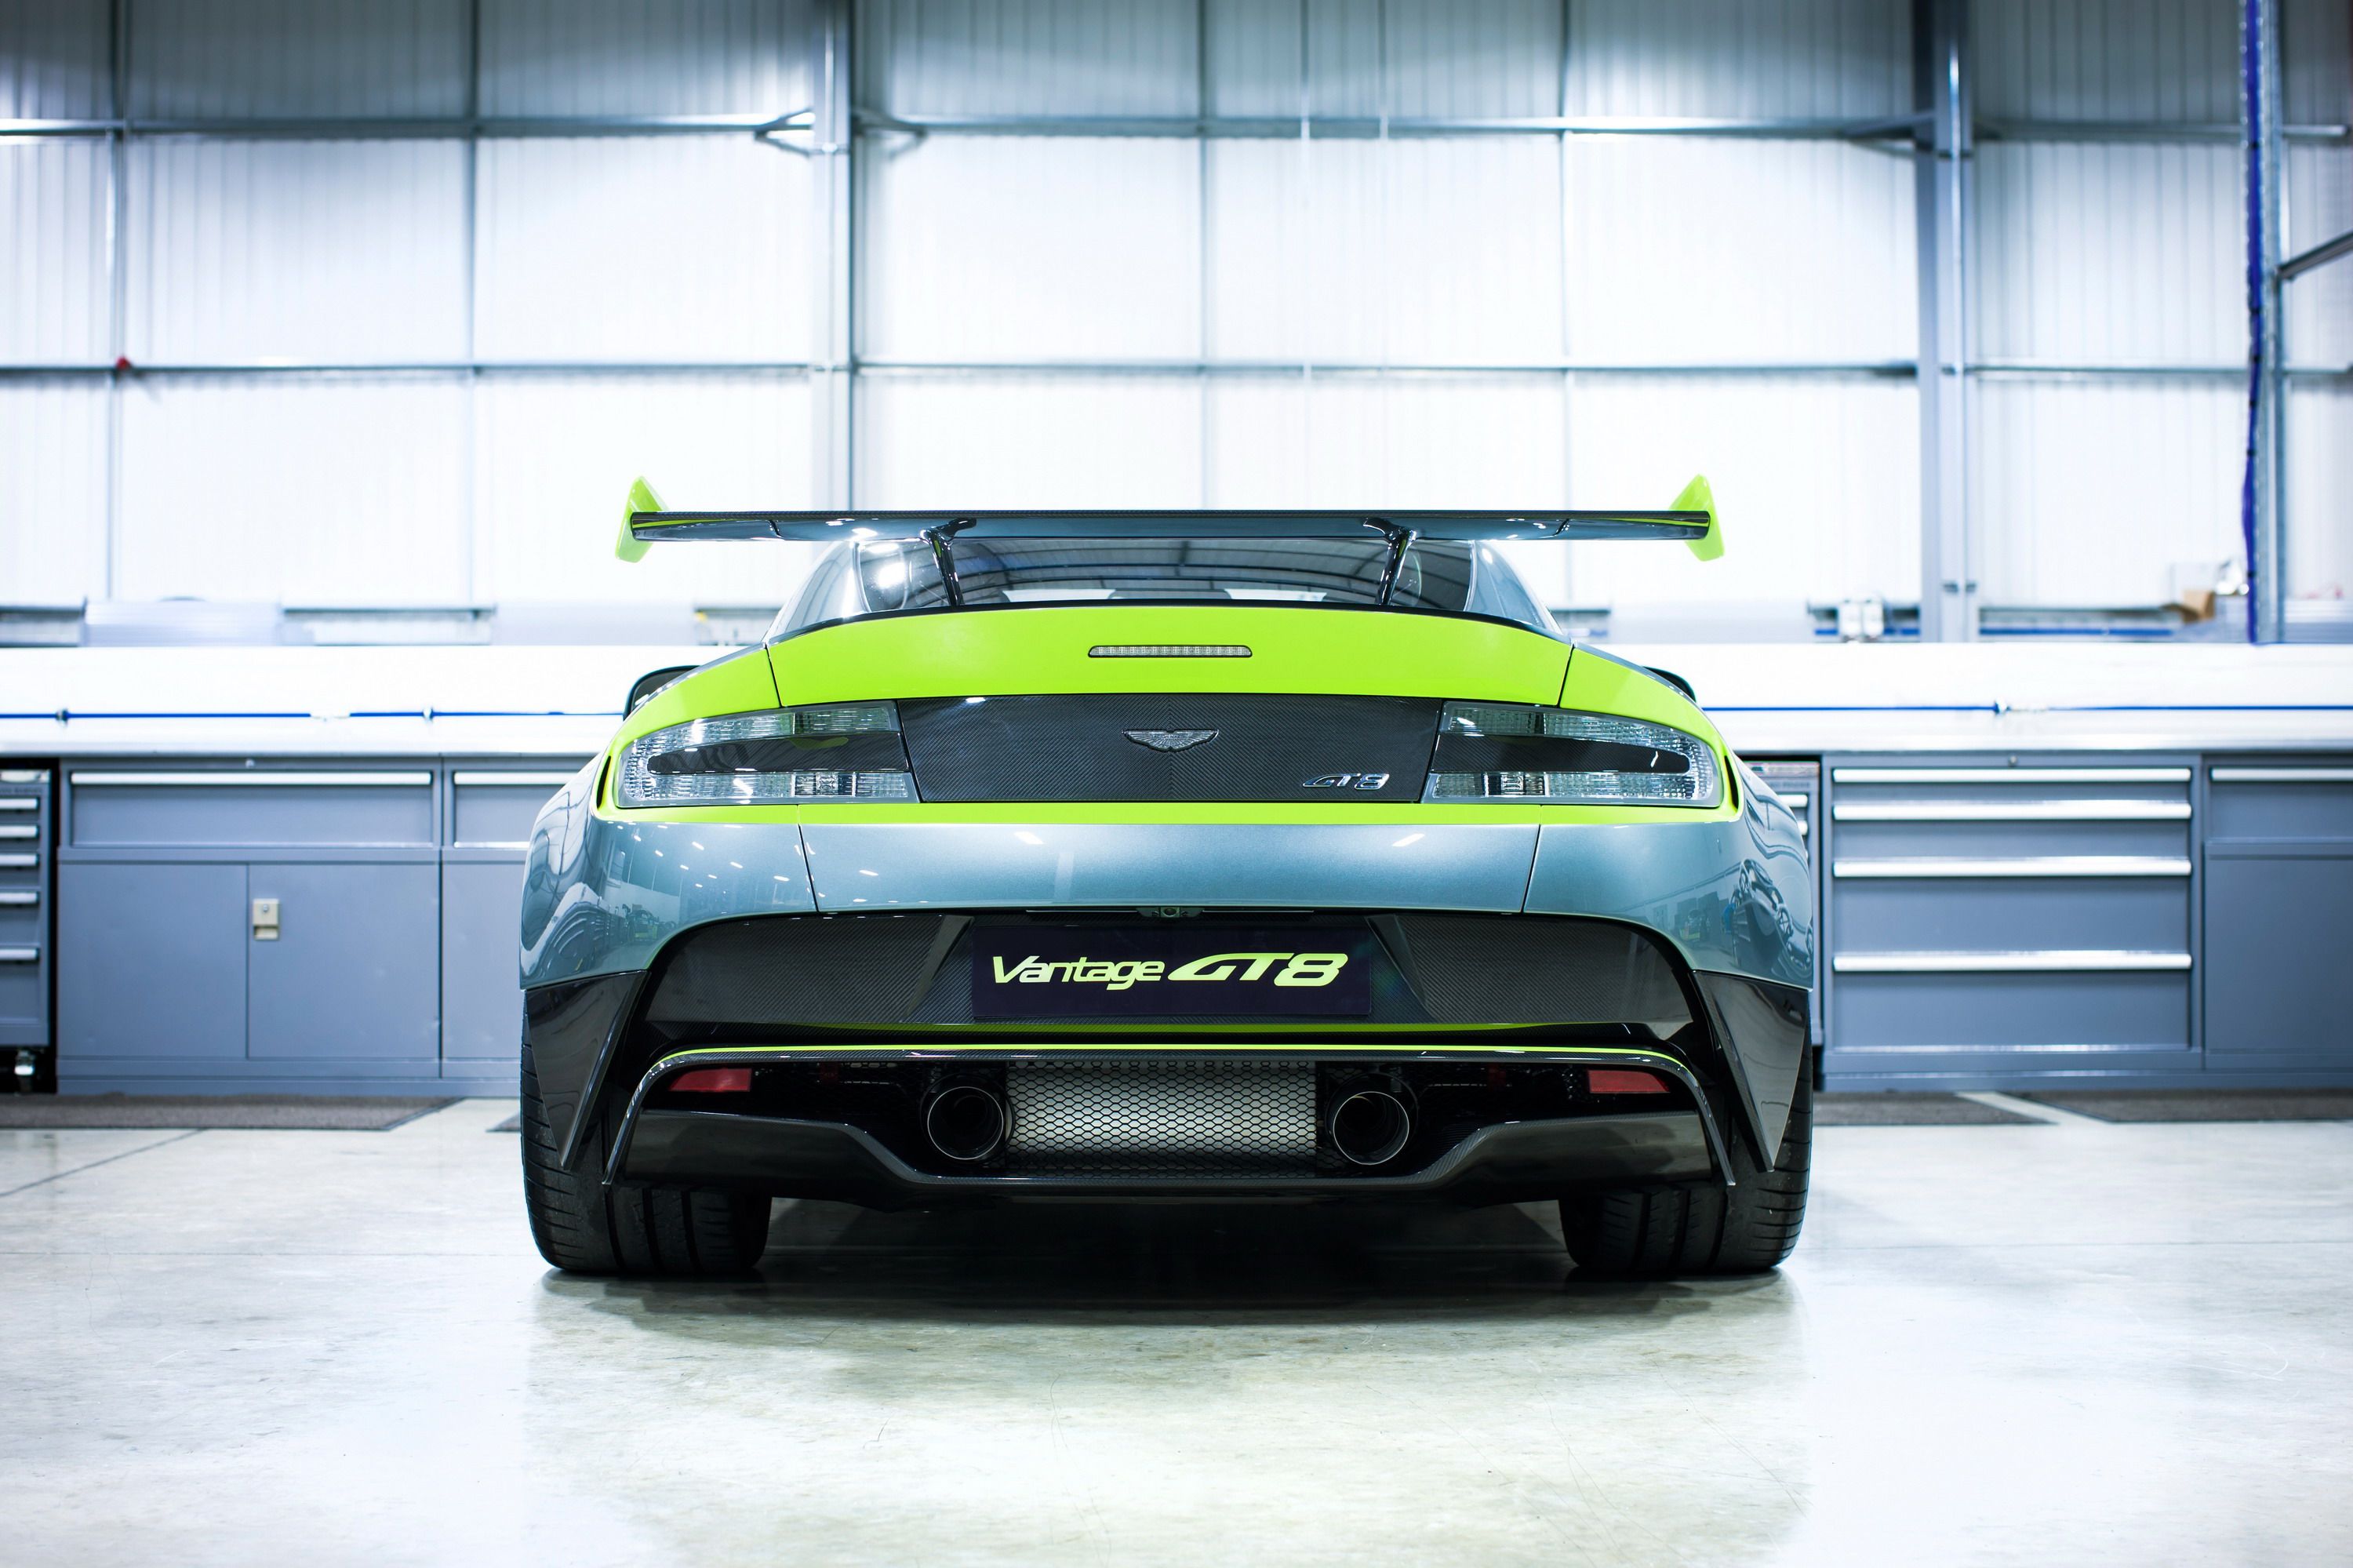 2017 Aston Martin Vantage GT8